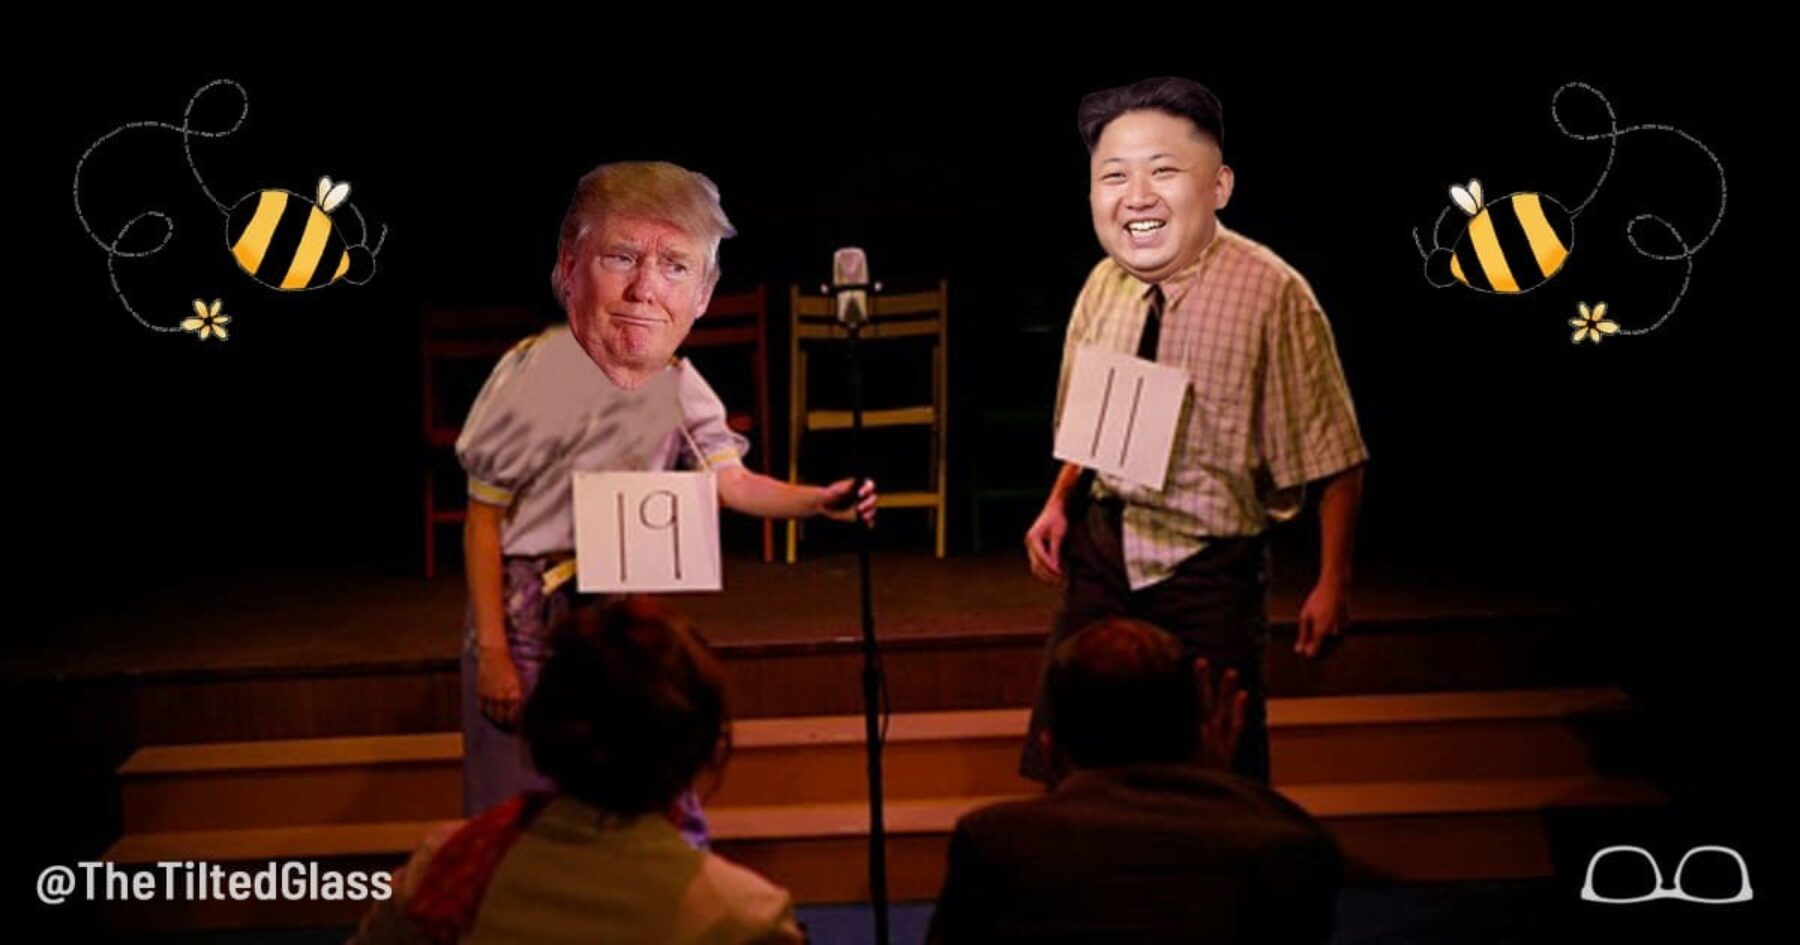 Kim Jong-Un Beats Trump in Korean Spelling Bee